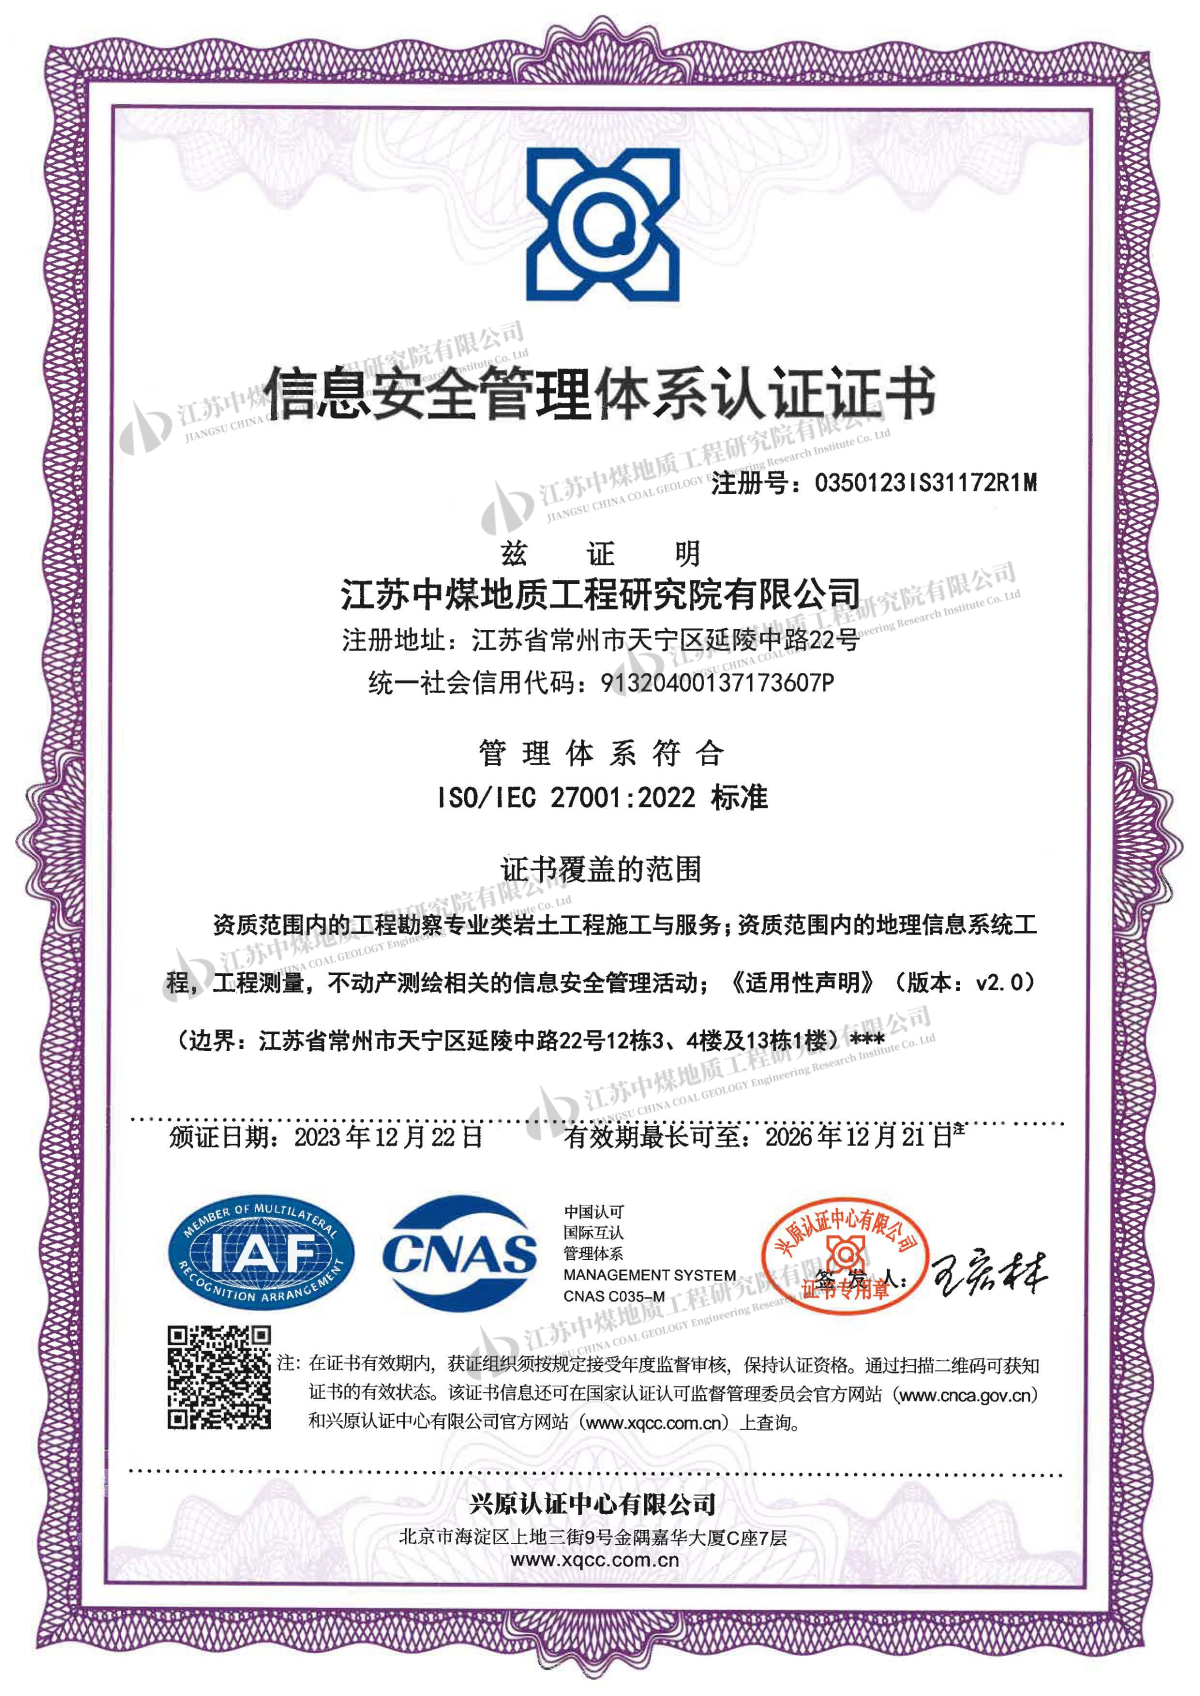 1、信息安全管理体系认证证书（有效期：2026.12.21）.jpg